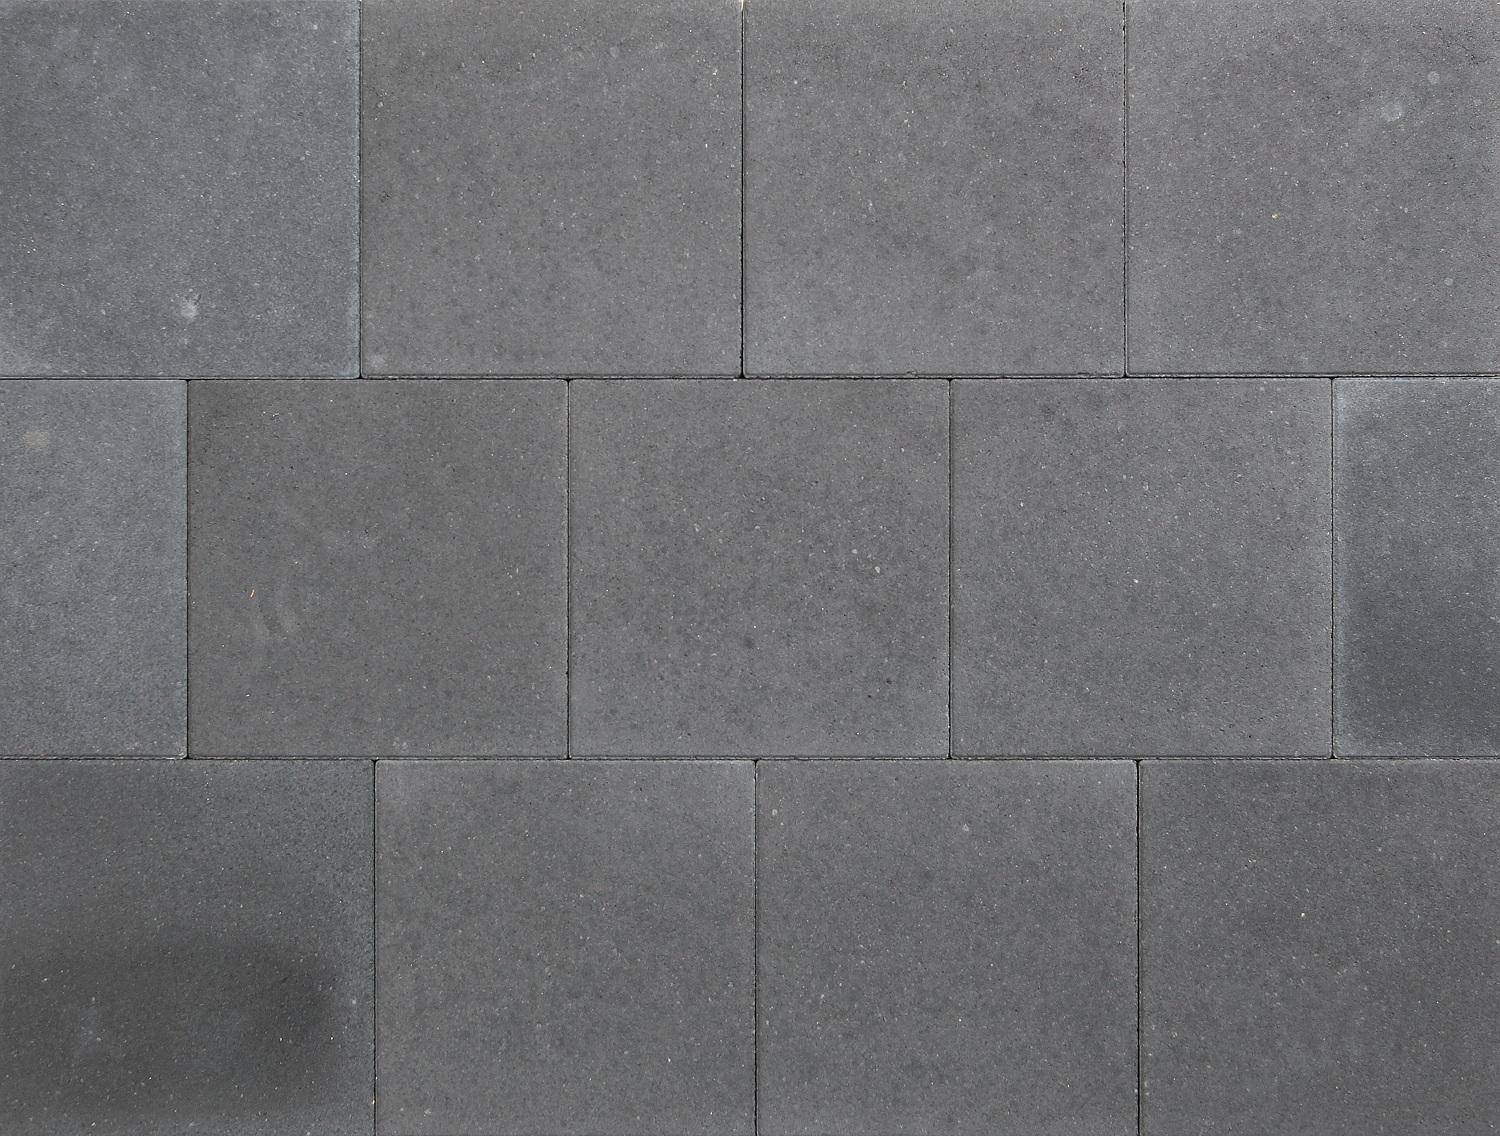 Beton-Gehwegplatte, 30x30x5cm, anthrazit, zweischichtig mit Basaltvorsatz